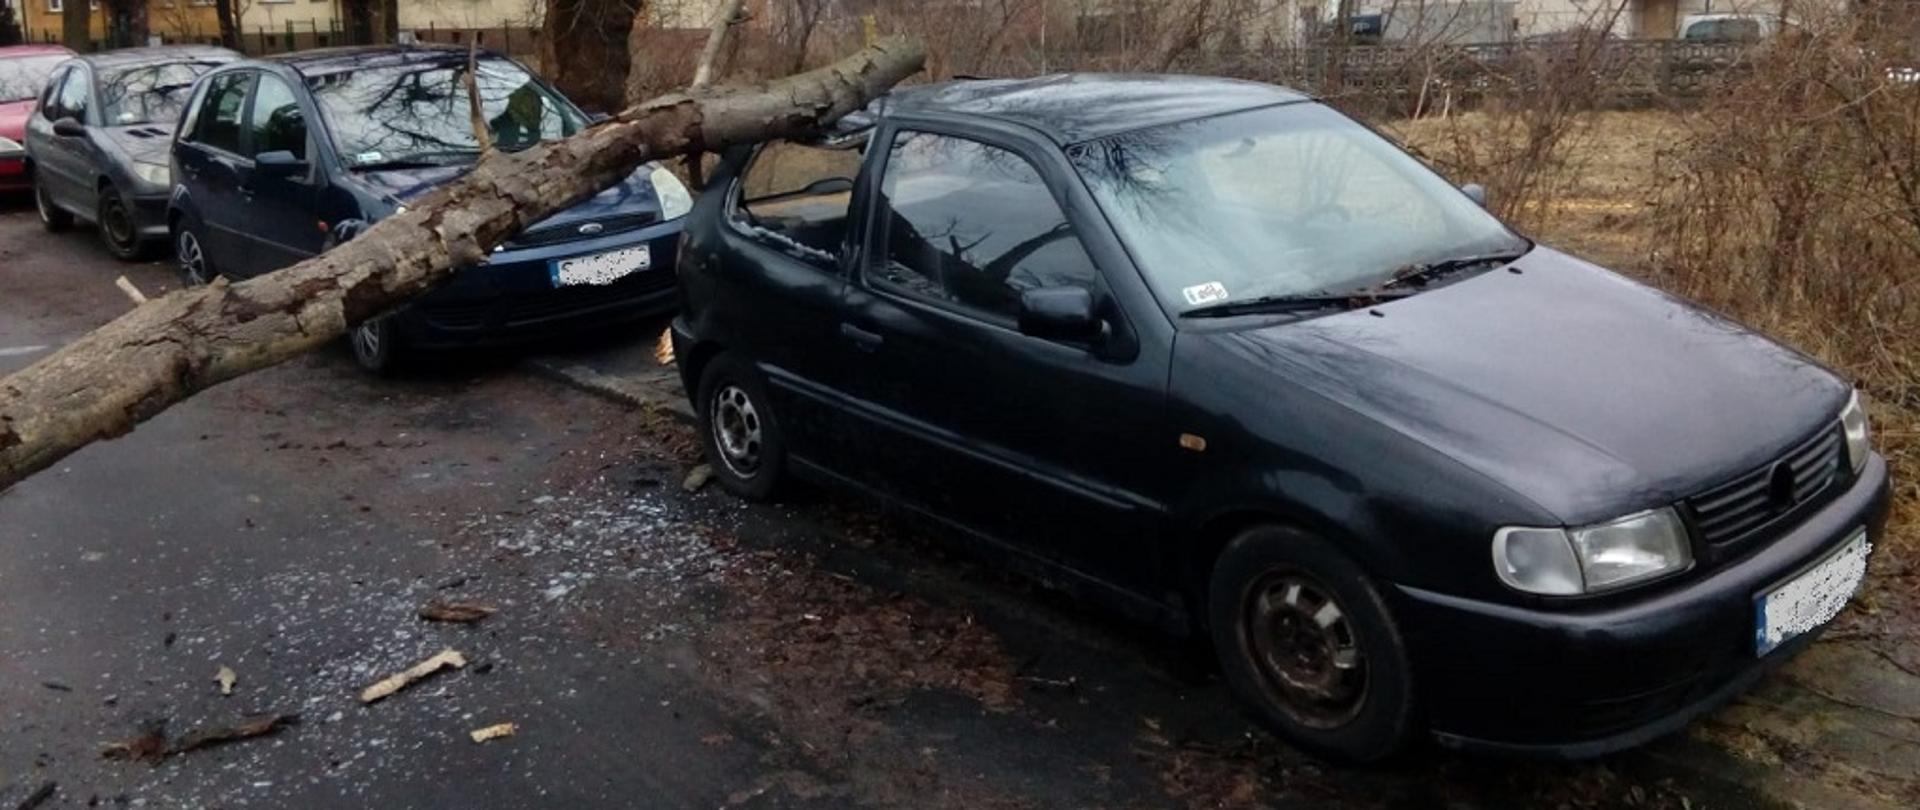 Zdjęcie przedstawia uszkodzony samochód przez powalone drzewo na tle zabudowań przy ul.Azot.